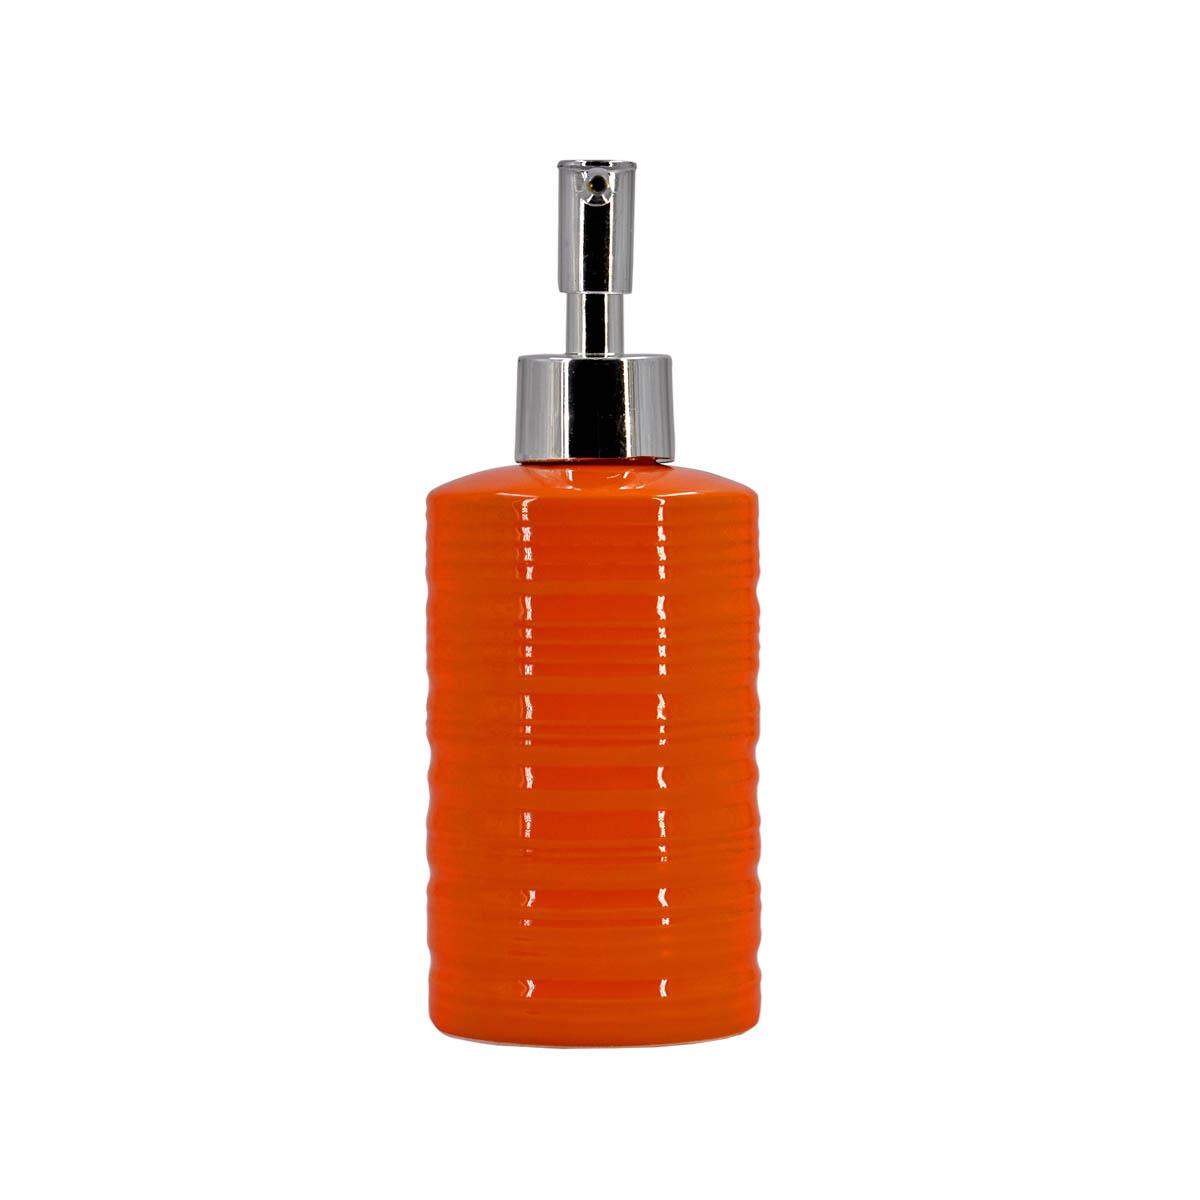 Ceramic Soap Dispenser handwash Pump for Bathroom, Set of 1, Orange (7975)